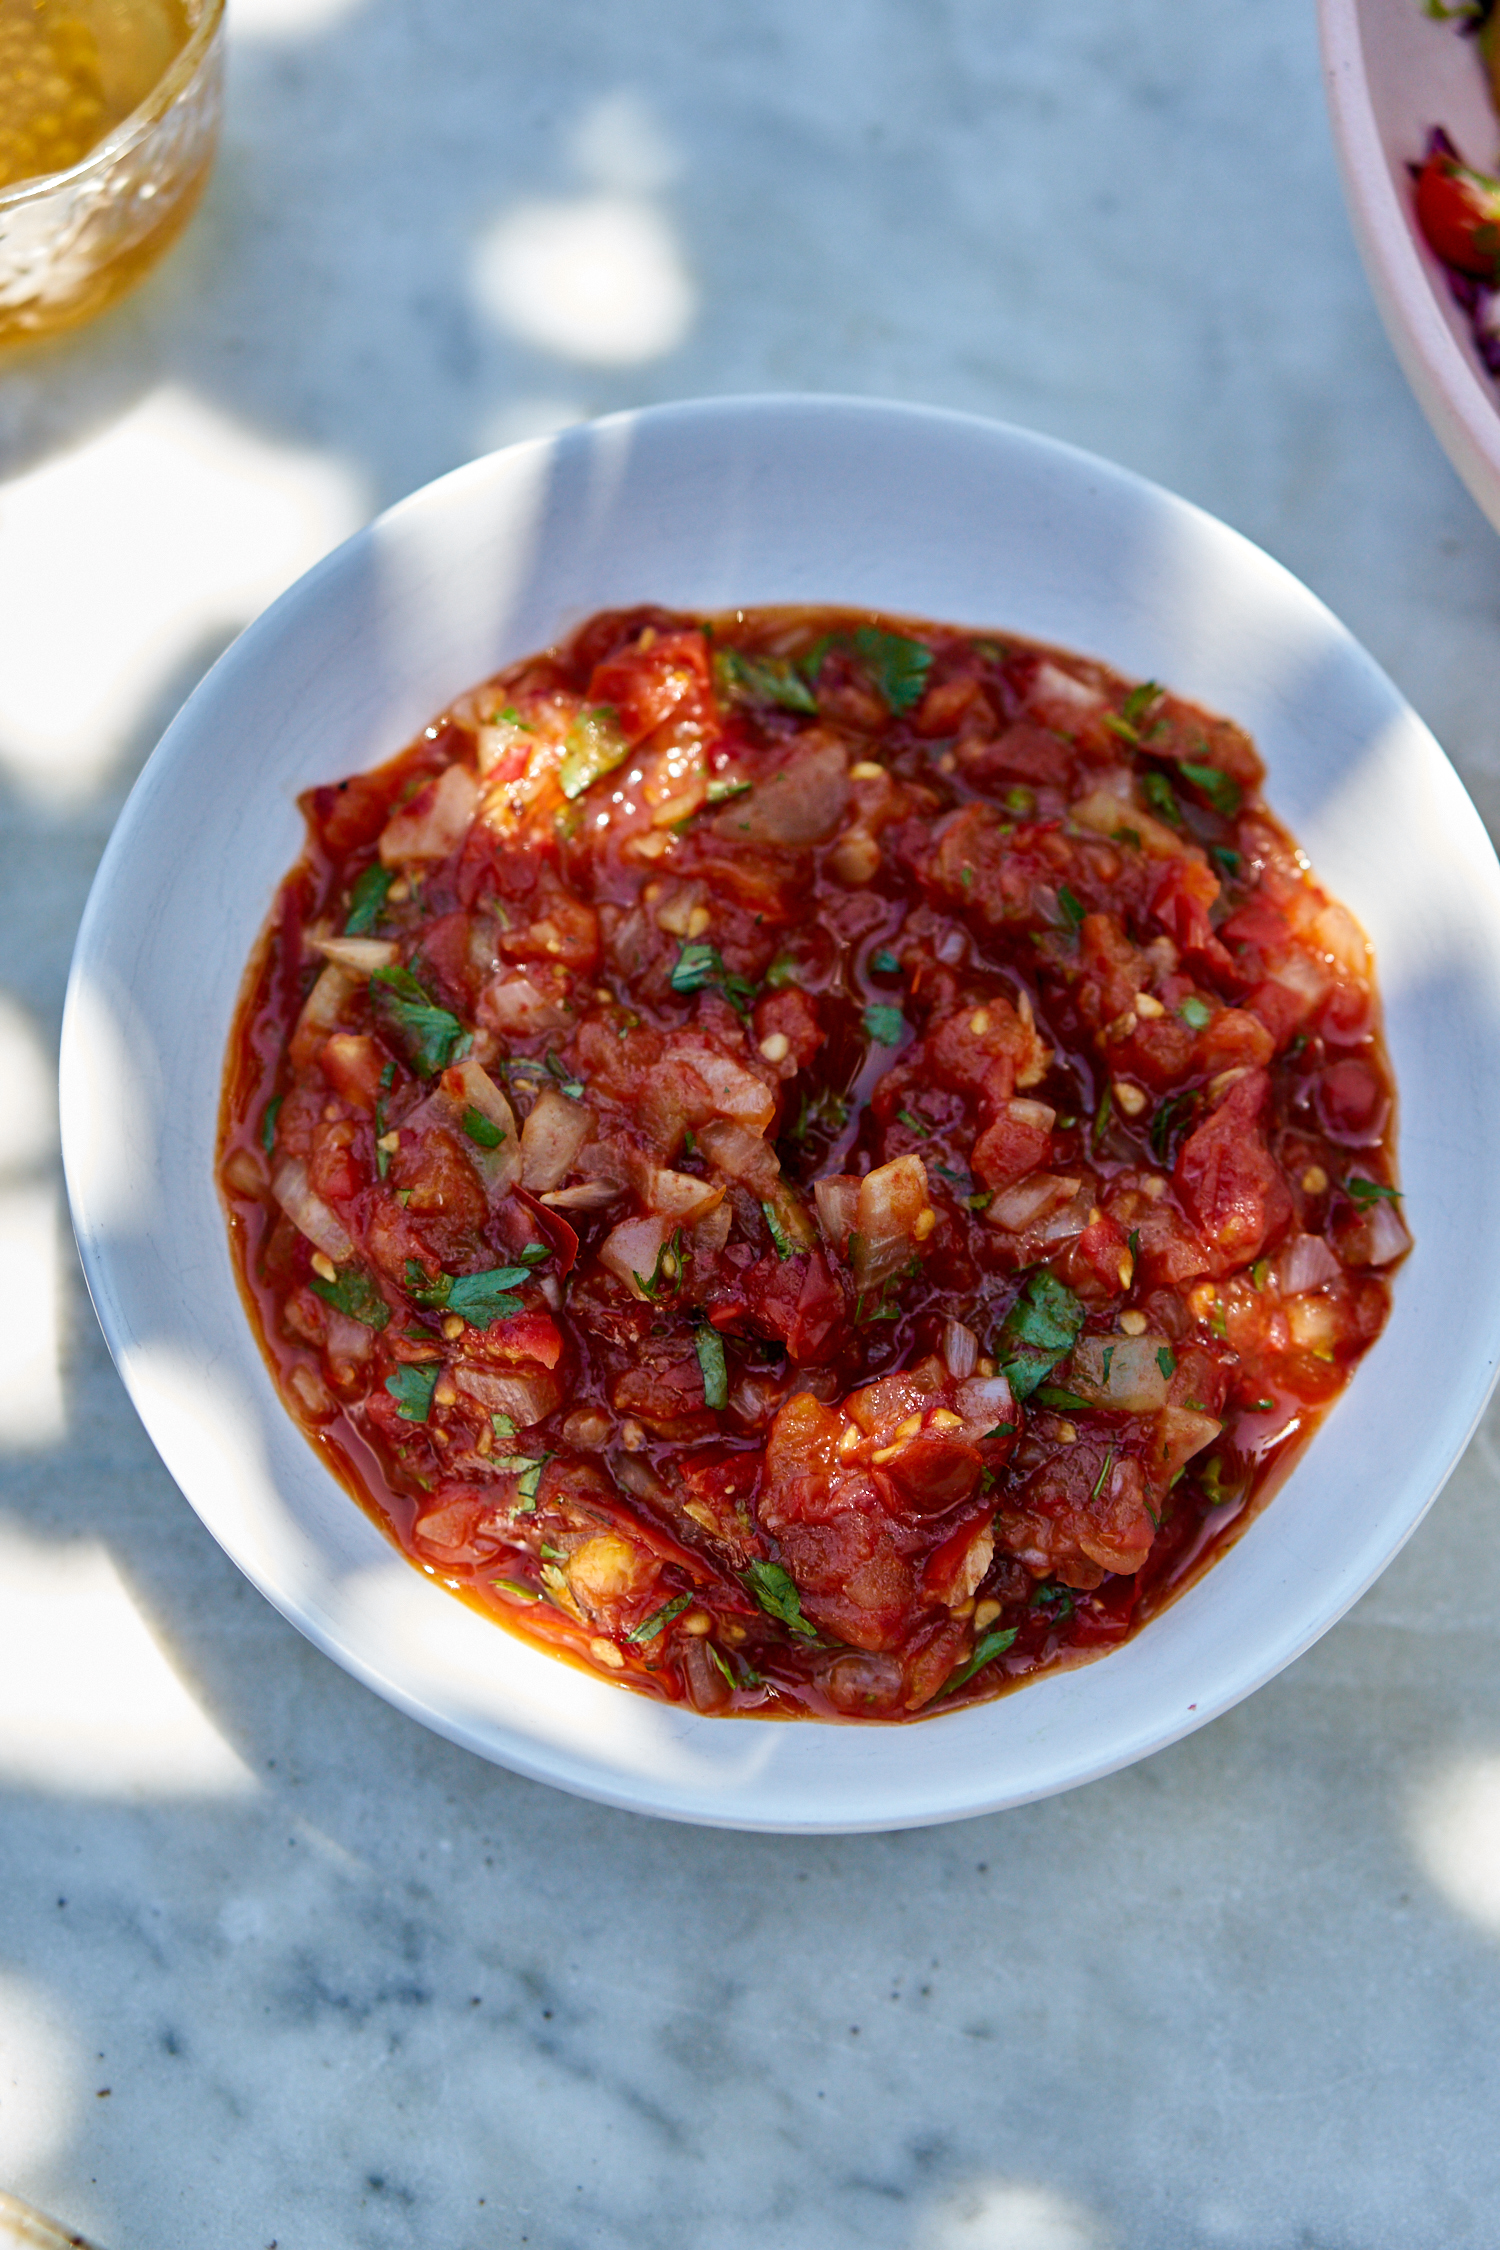 salsa recipes